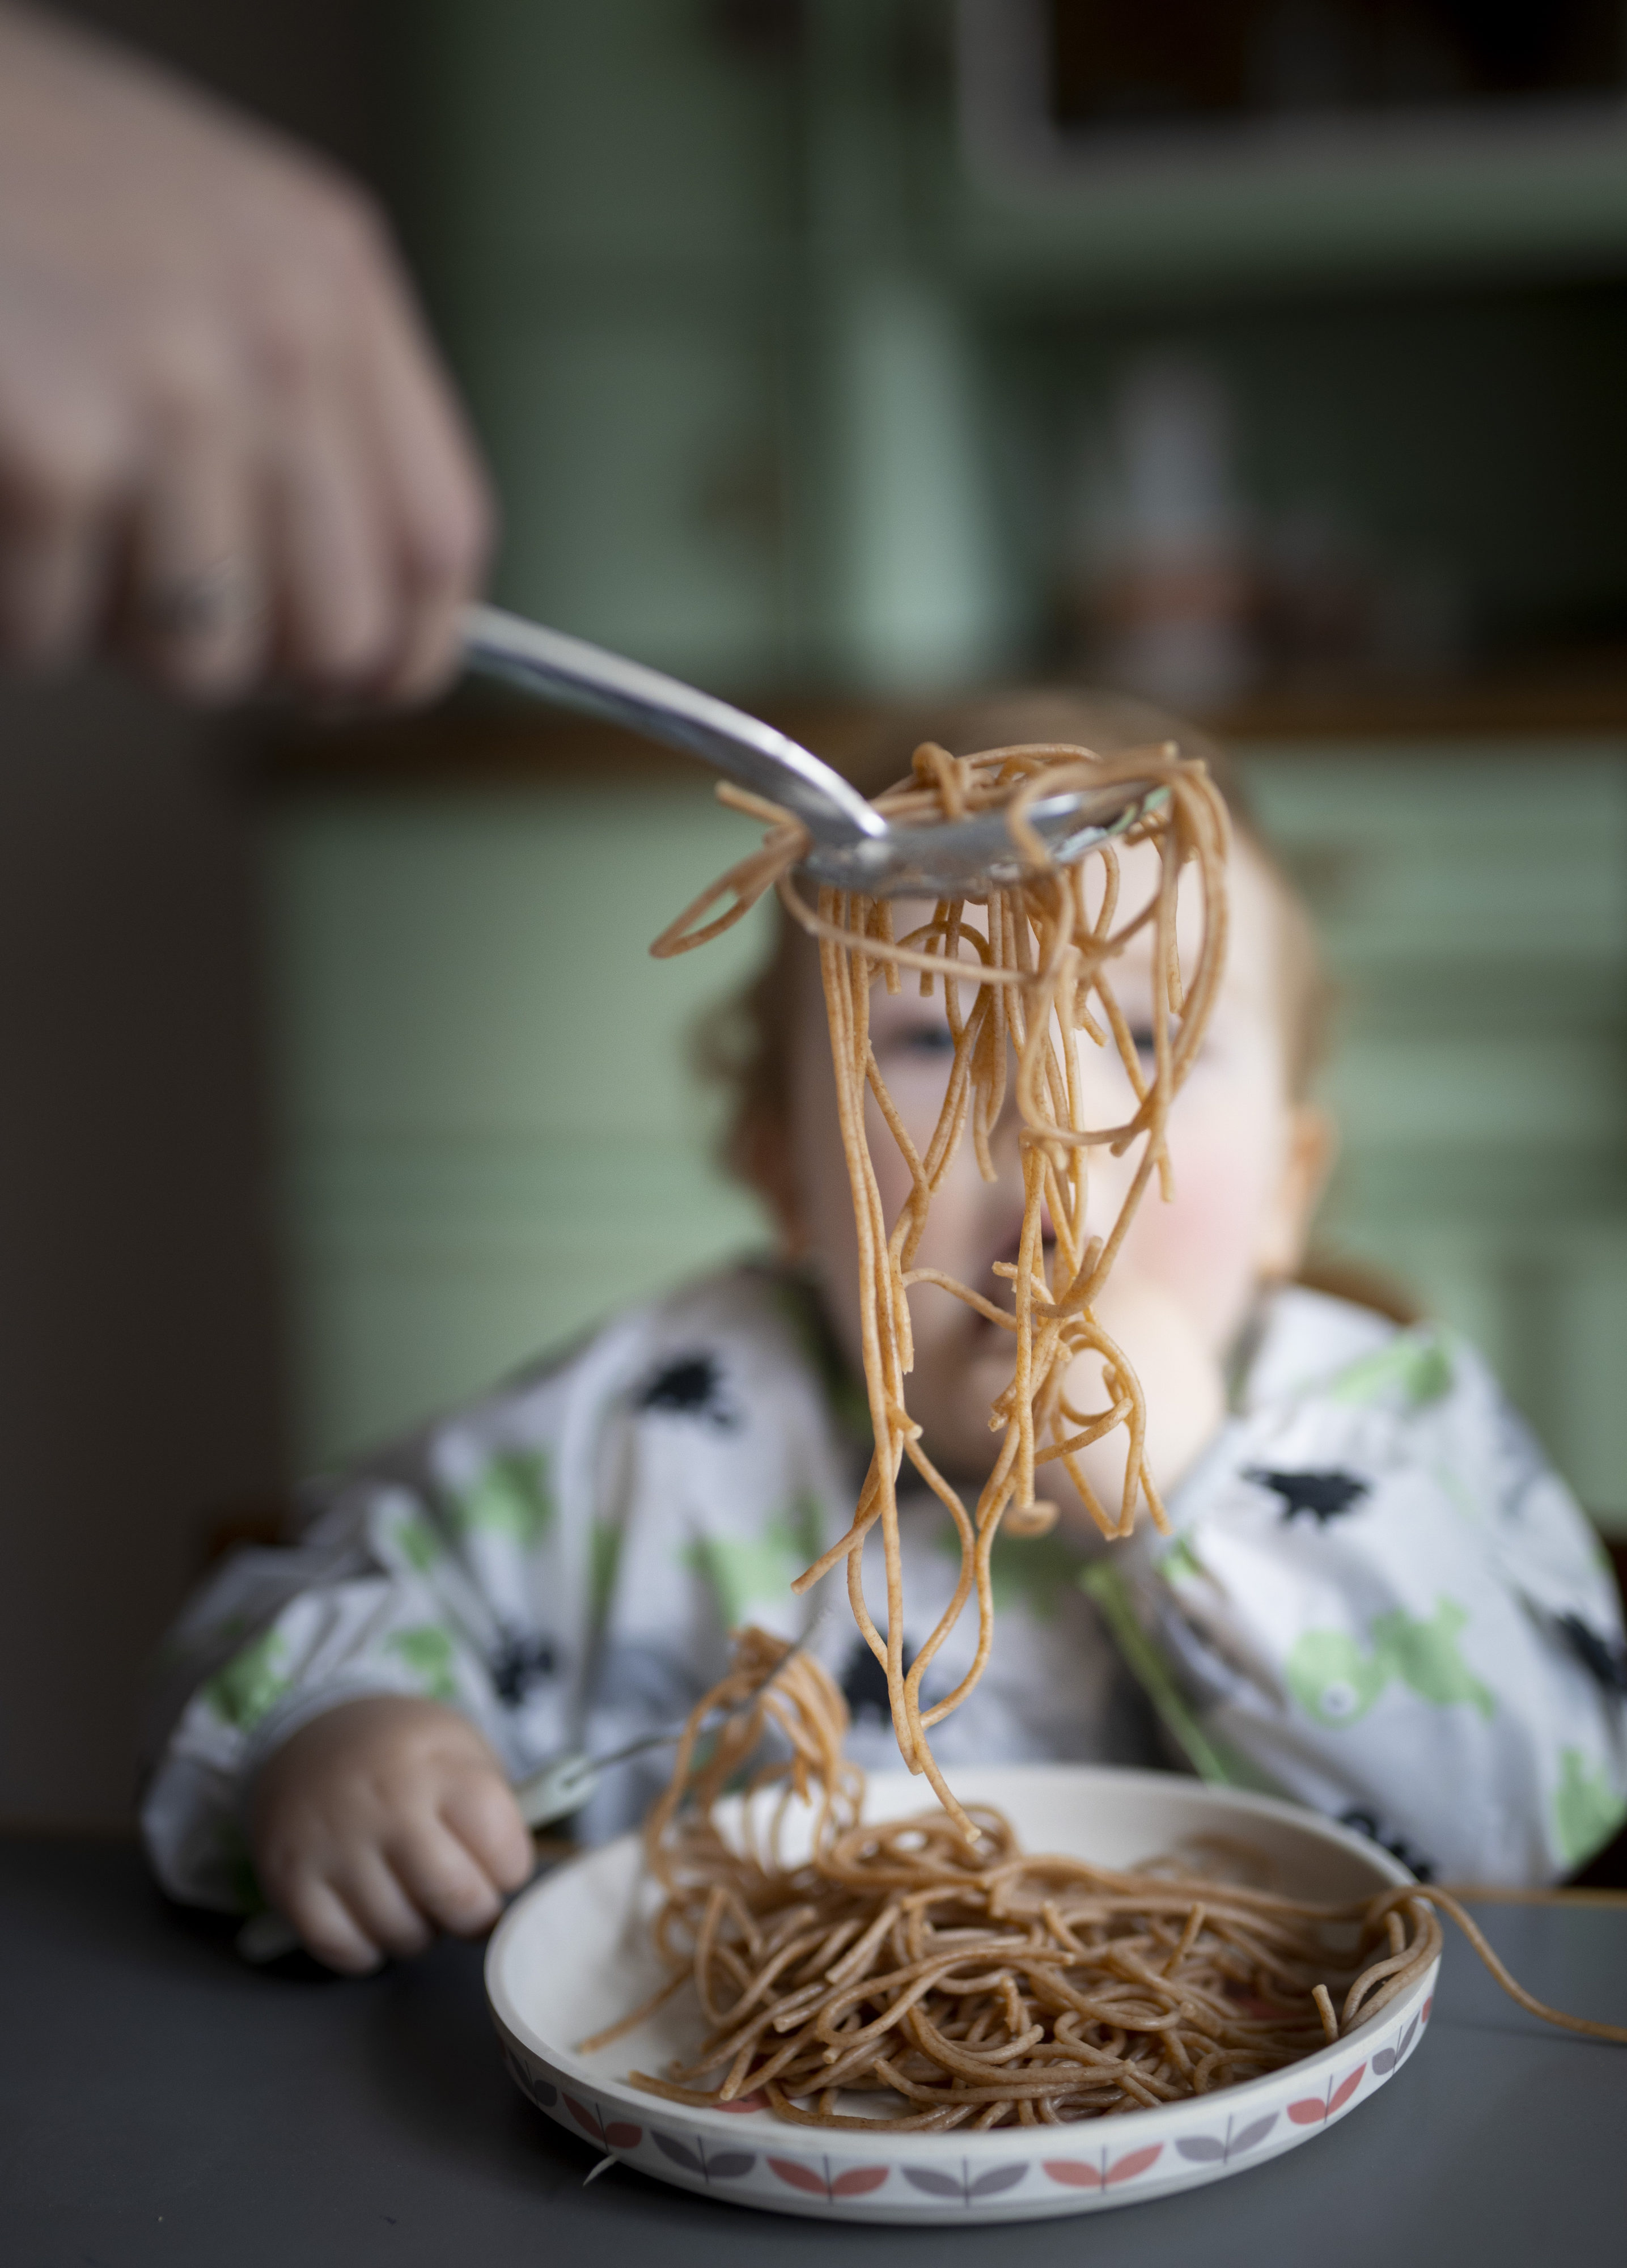 Toddler eating noodles